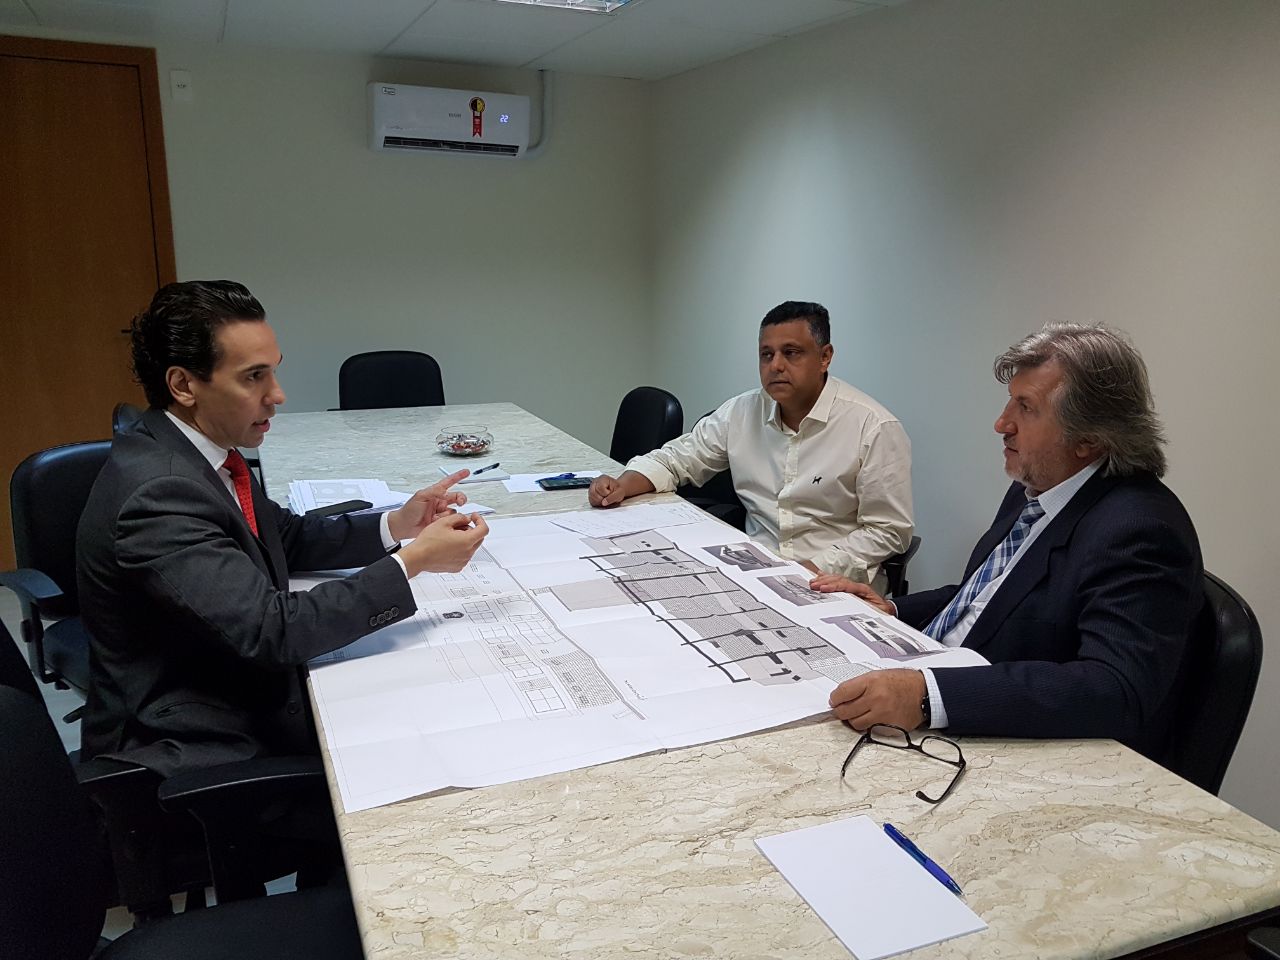 Pavan busca recuperar verba para construção de nova delegacia em Balneário Camboriú